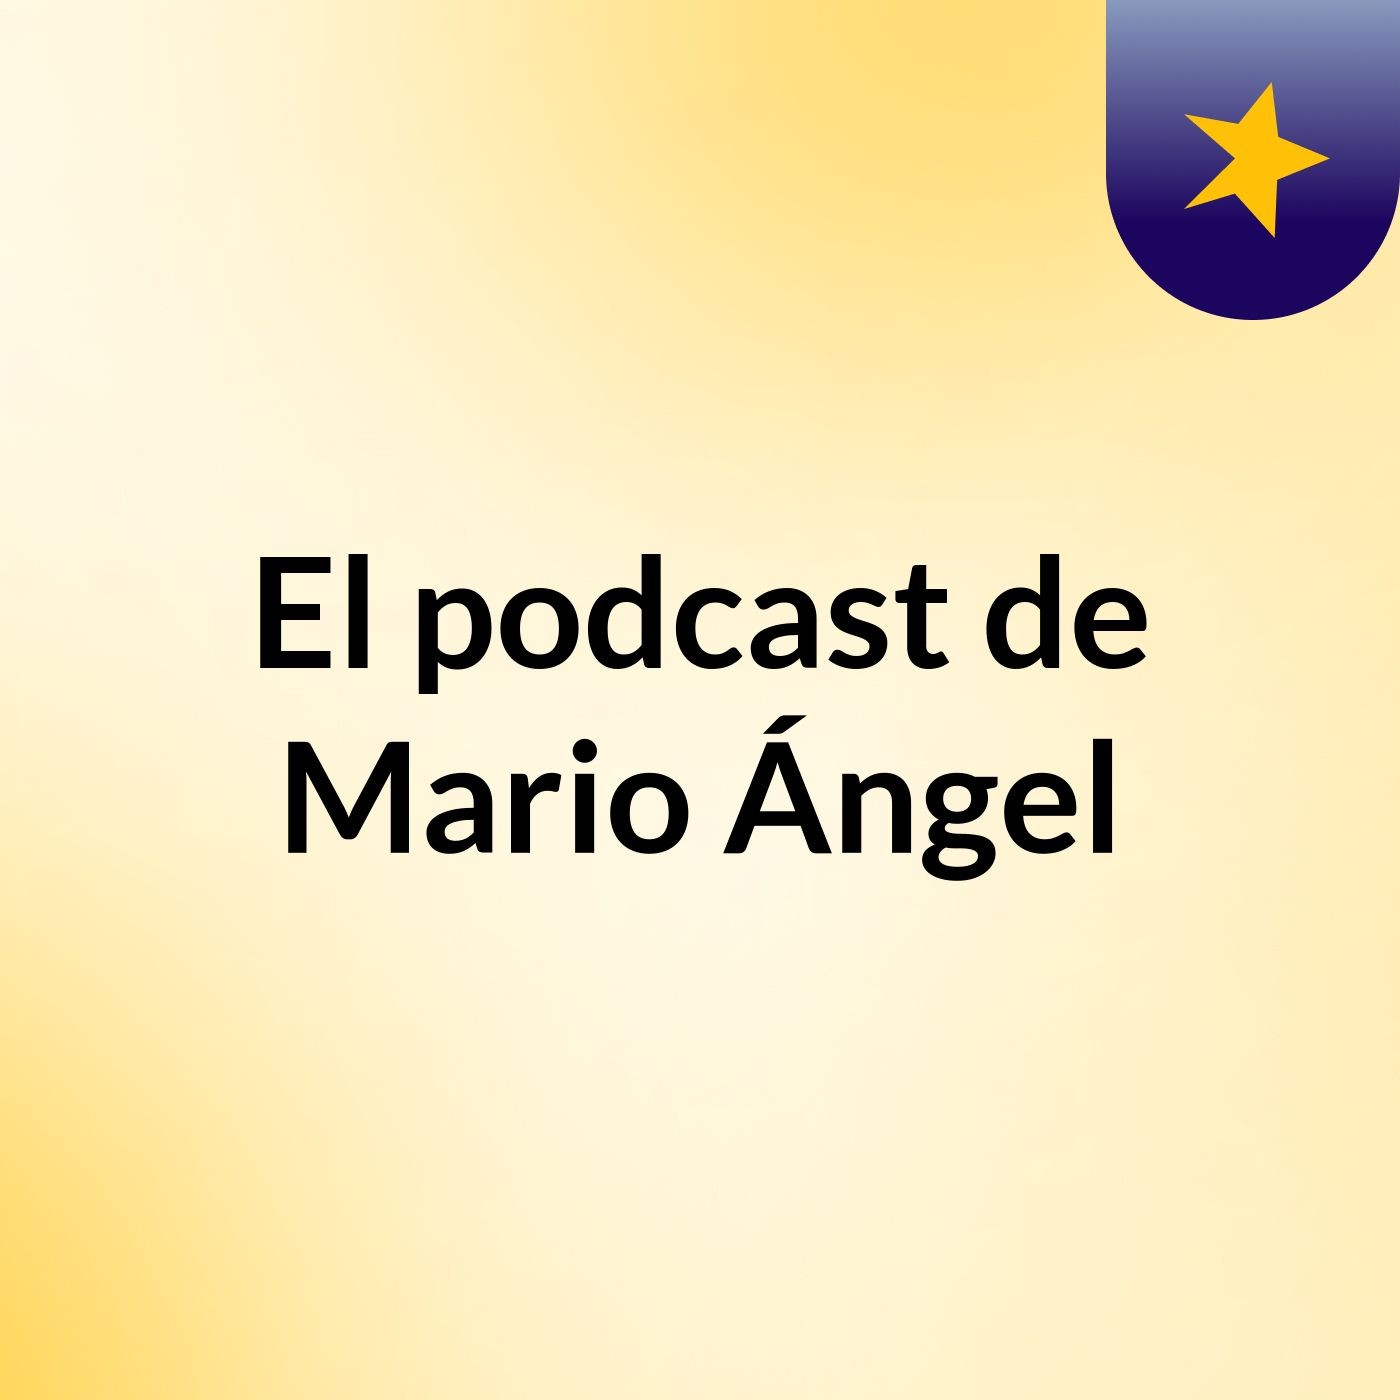 El podcast de Mario Ángel